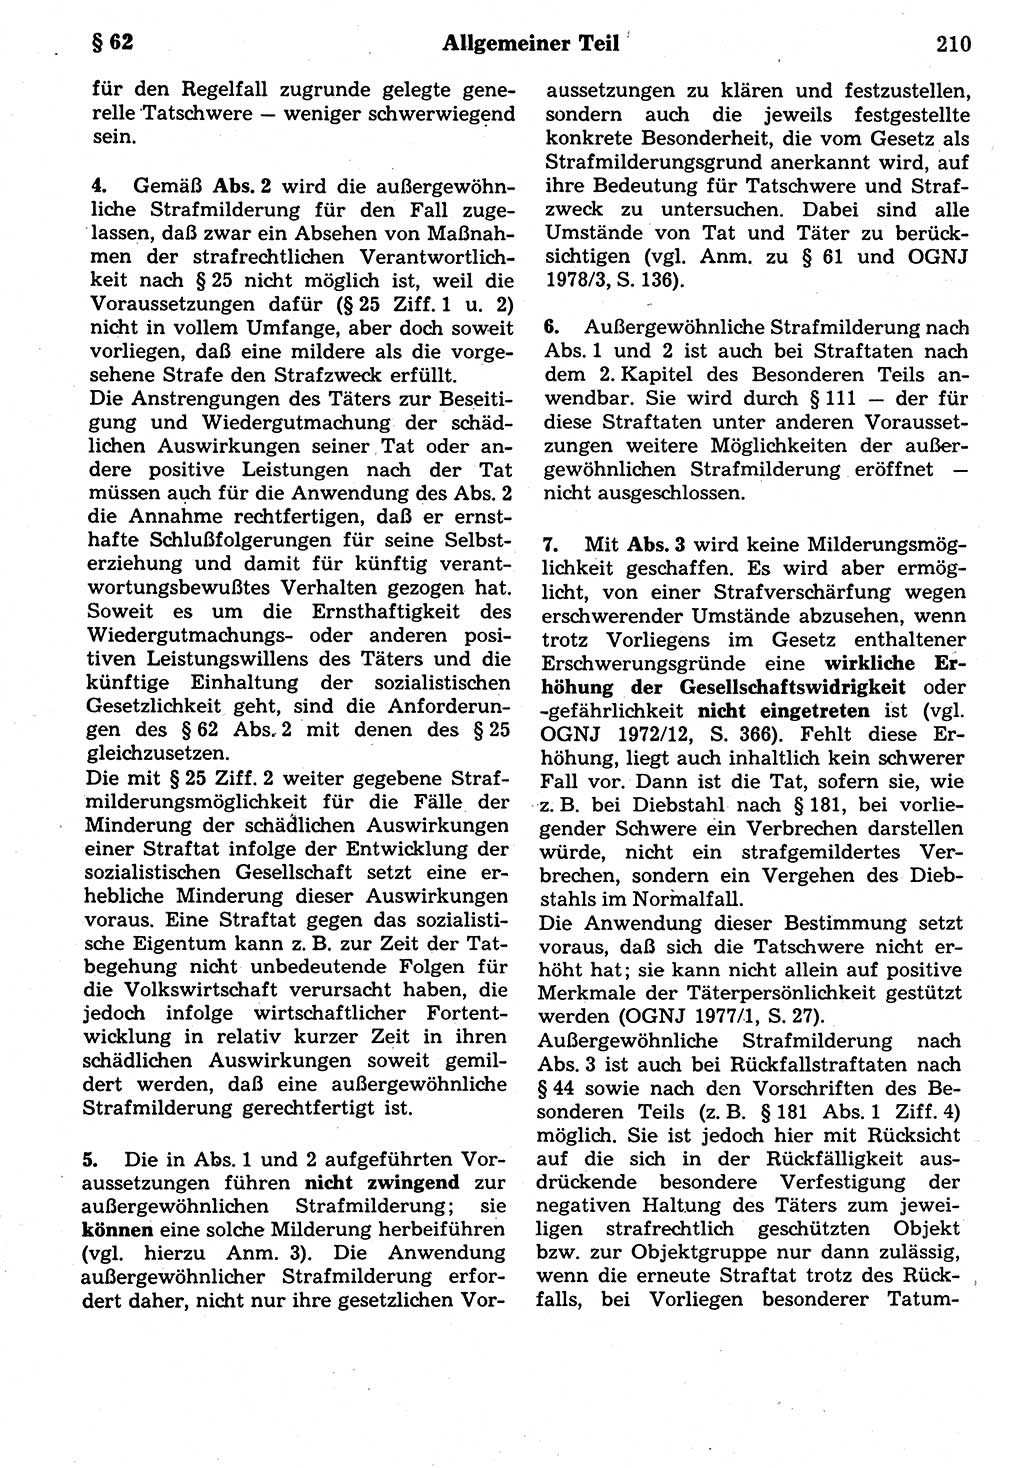 Strafrecht der Deutschen Demokratischen Republik (DDR), Kommentar zum Strafgesetzbuch (StGB) 1987, Seite 210 (Strafr. DDR Komm. StGB 1987, S. 210)